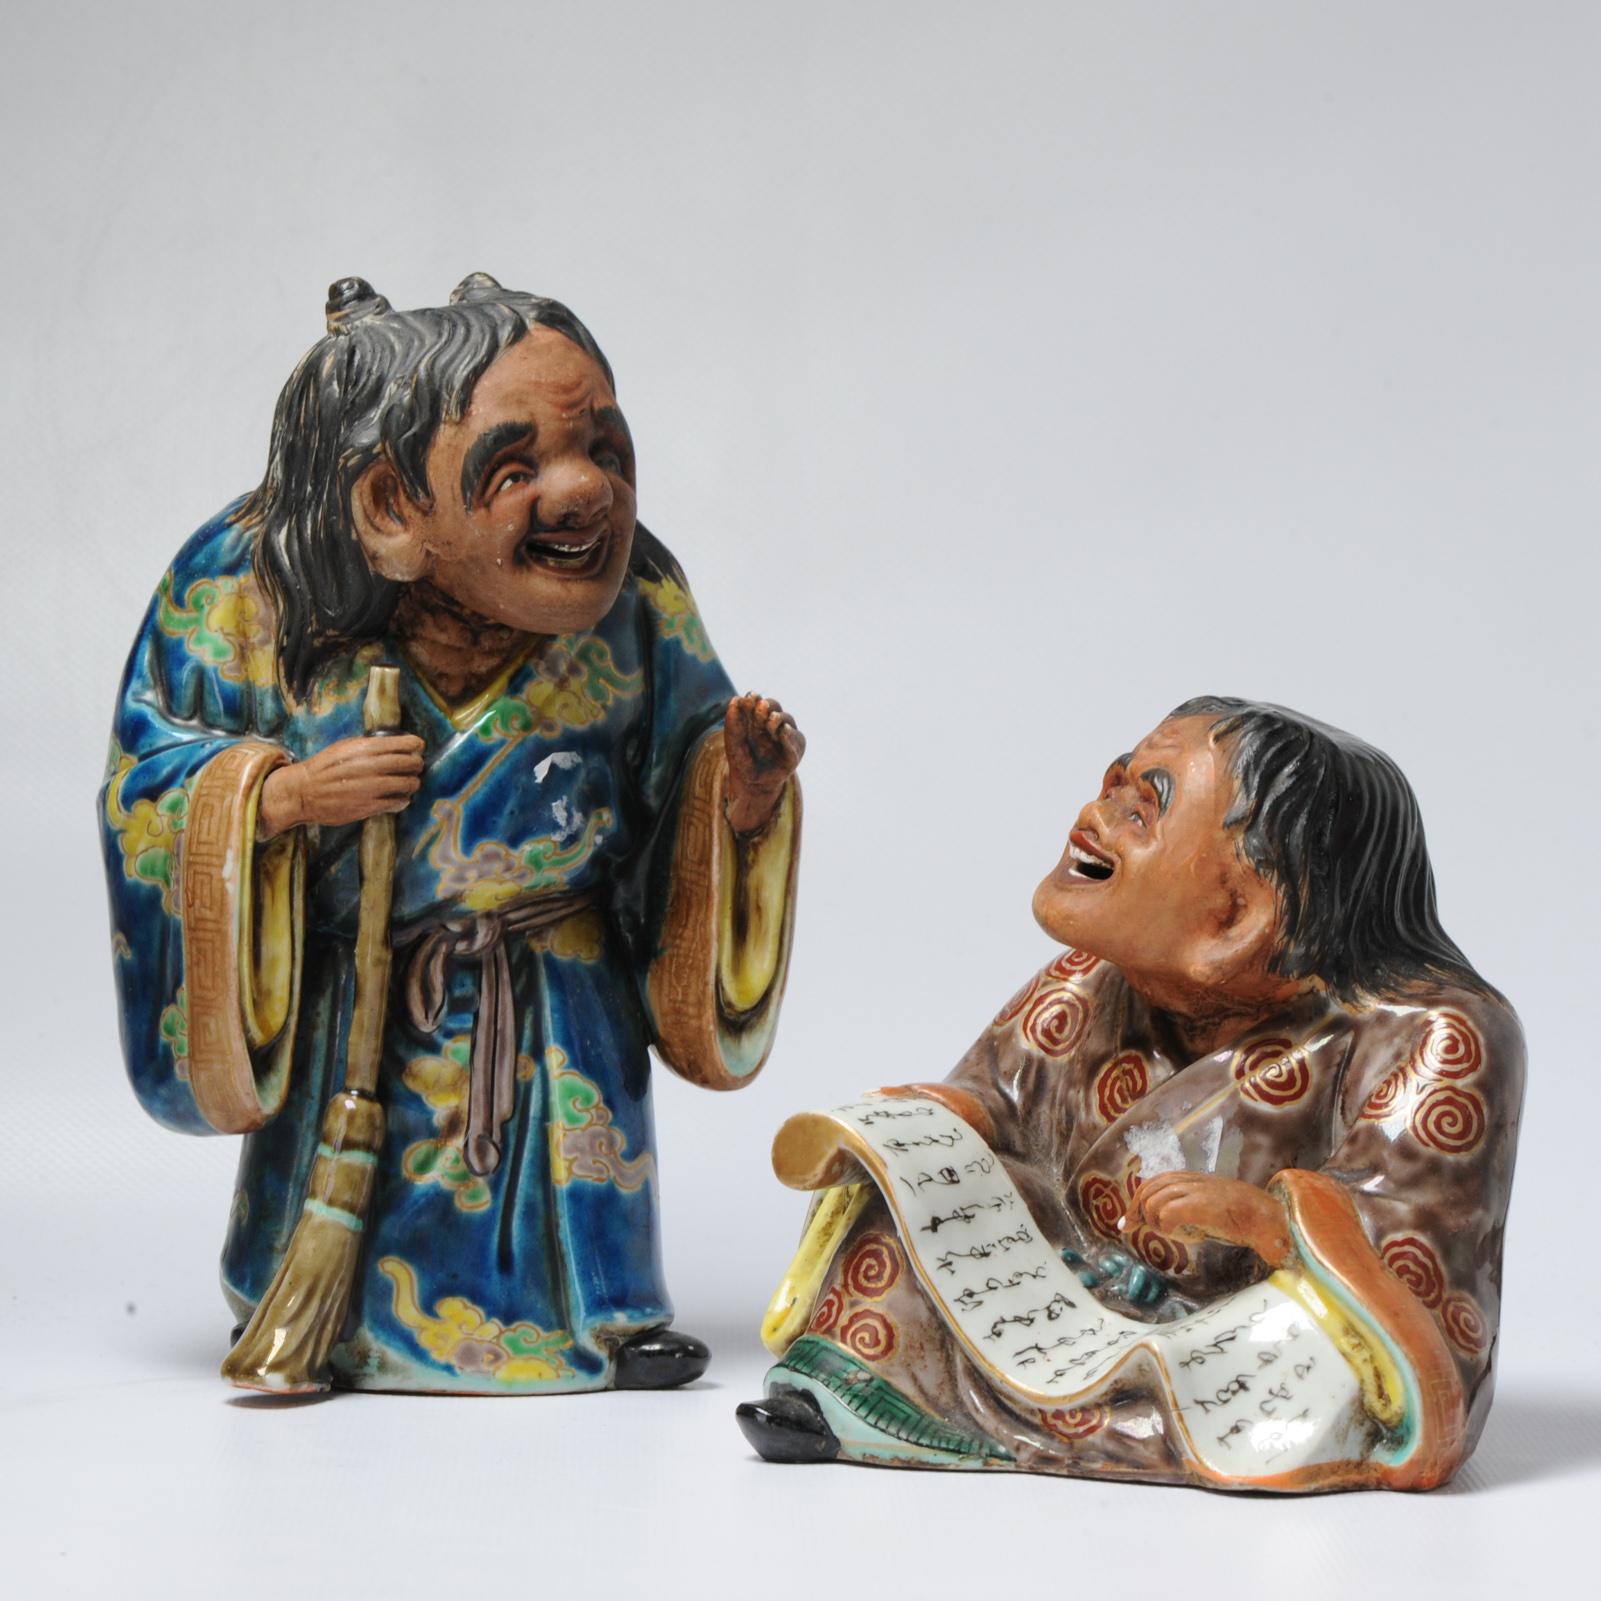 japanese ceramic figurines